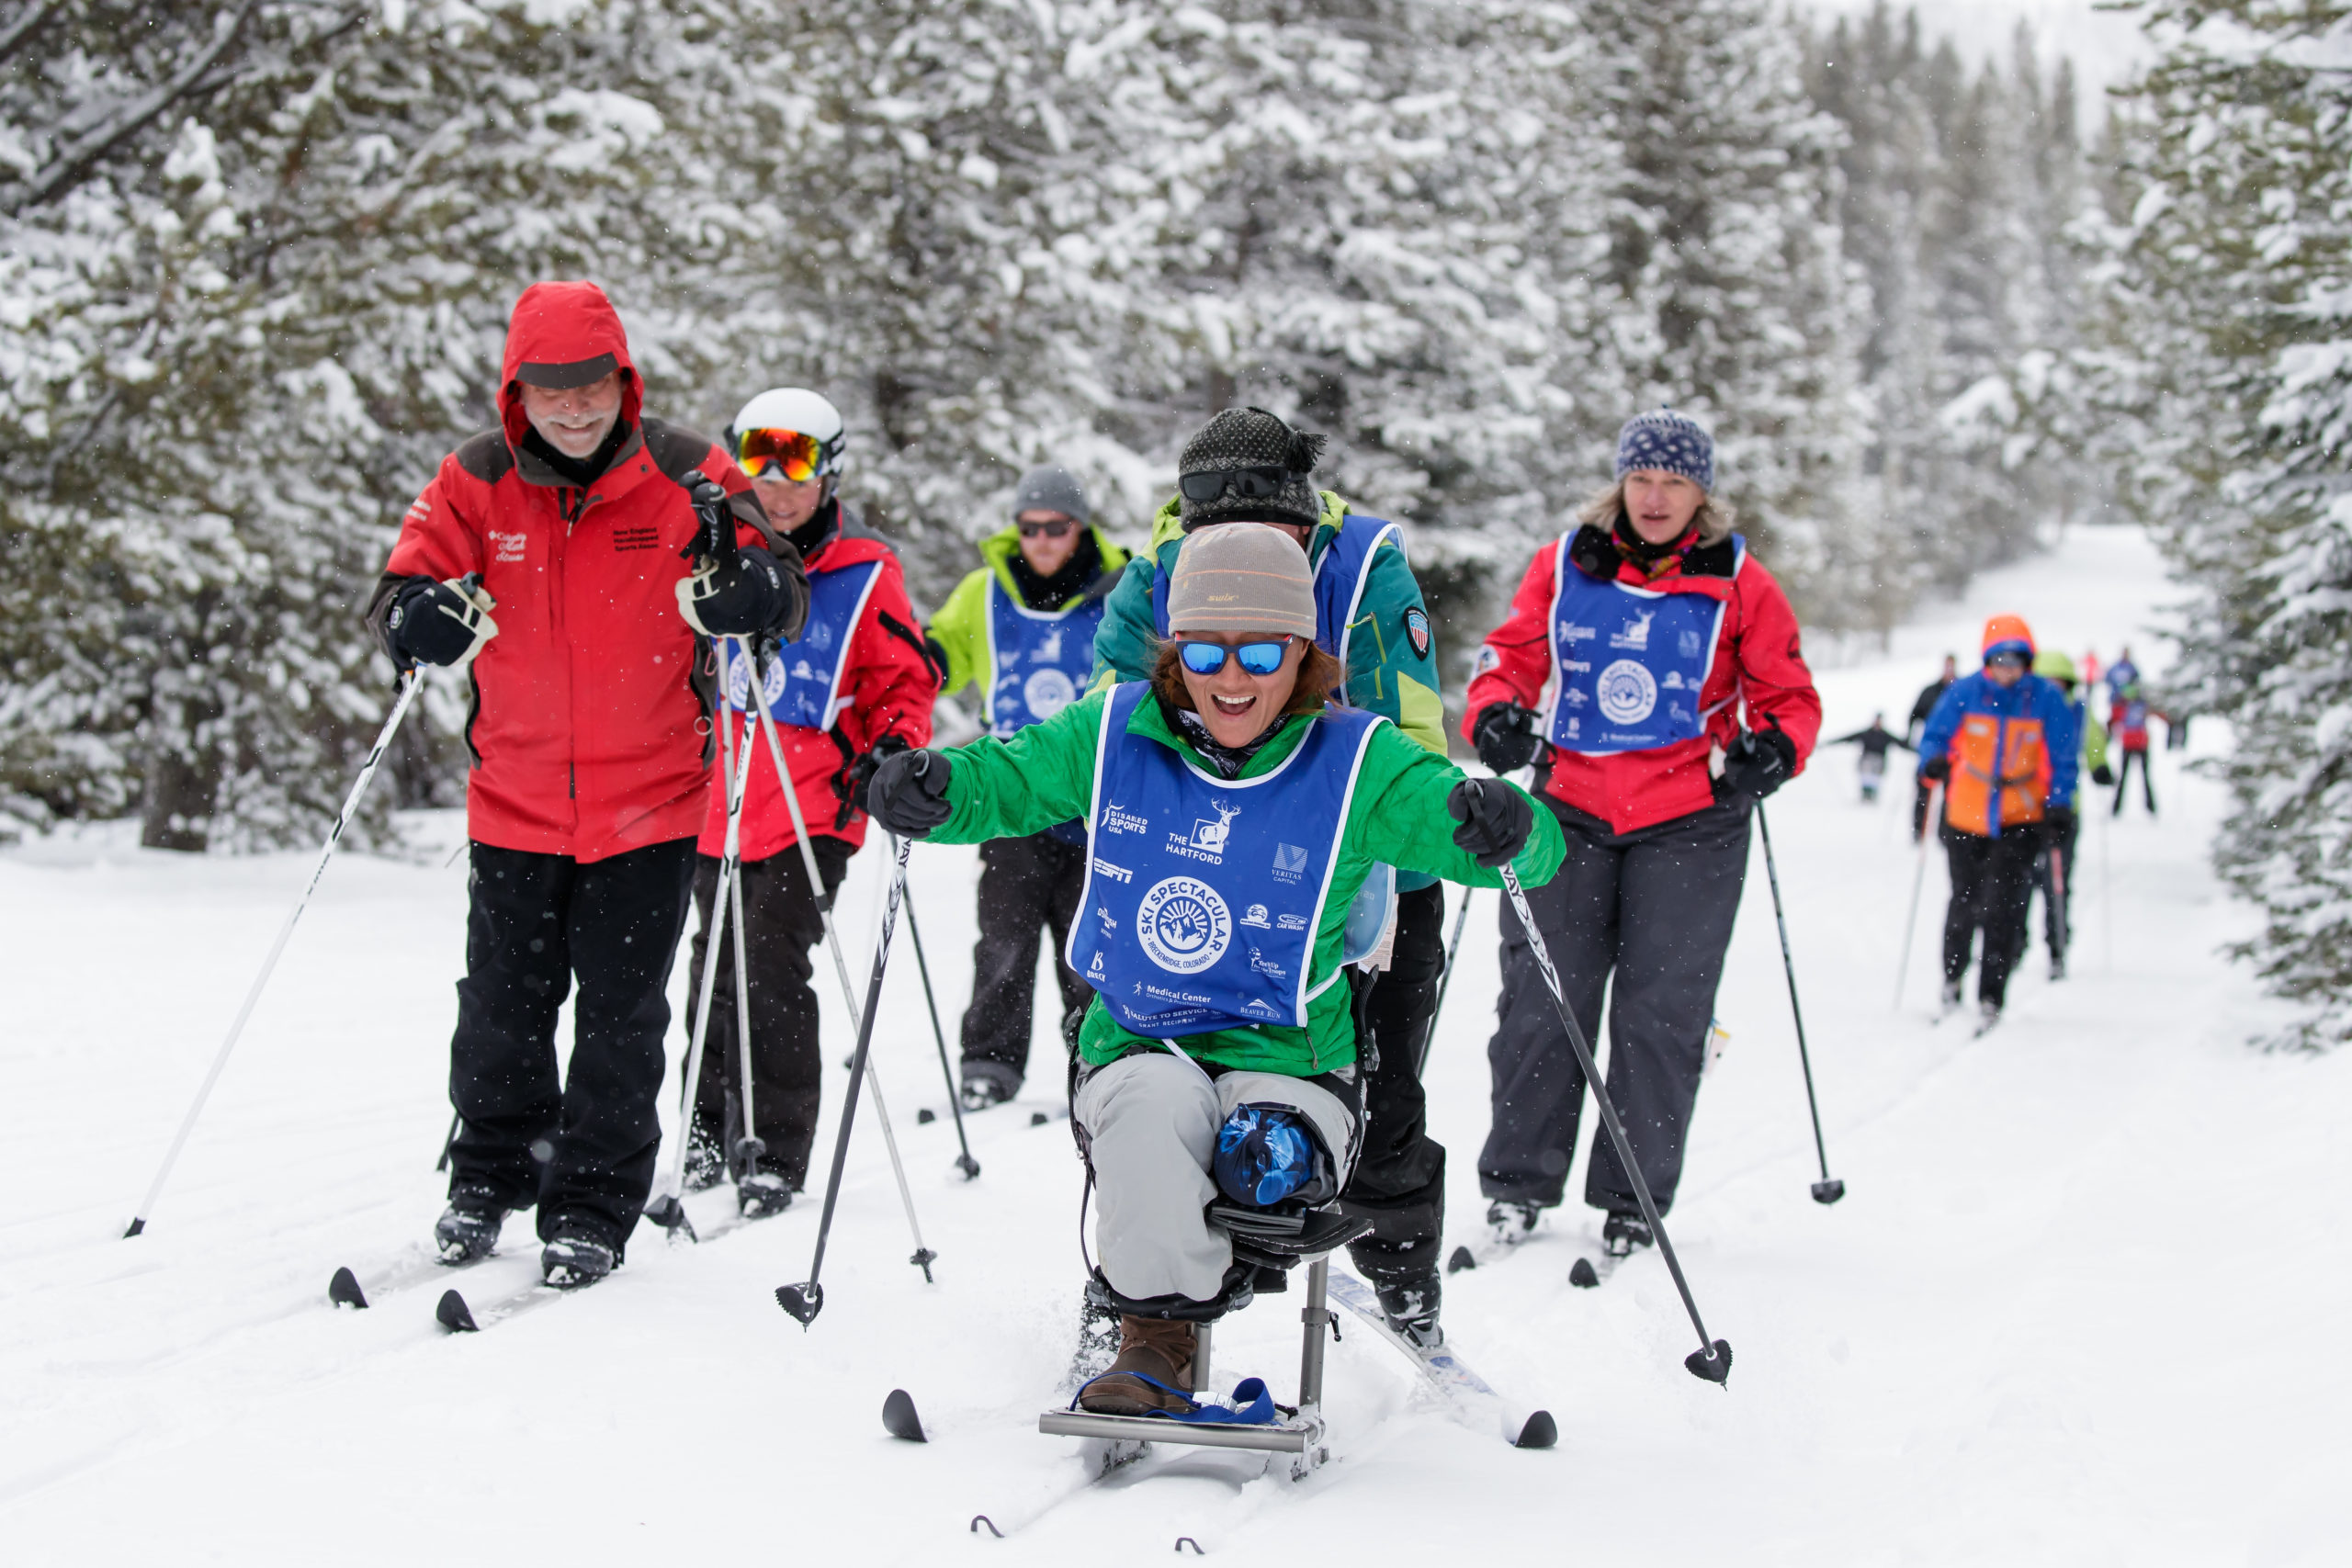 Ski Spec athletes and coaches on skis and bi-skis on ski slope